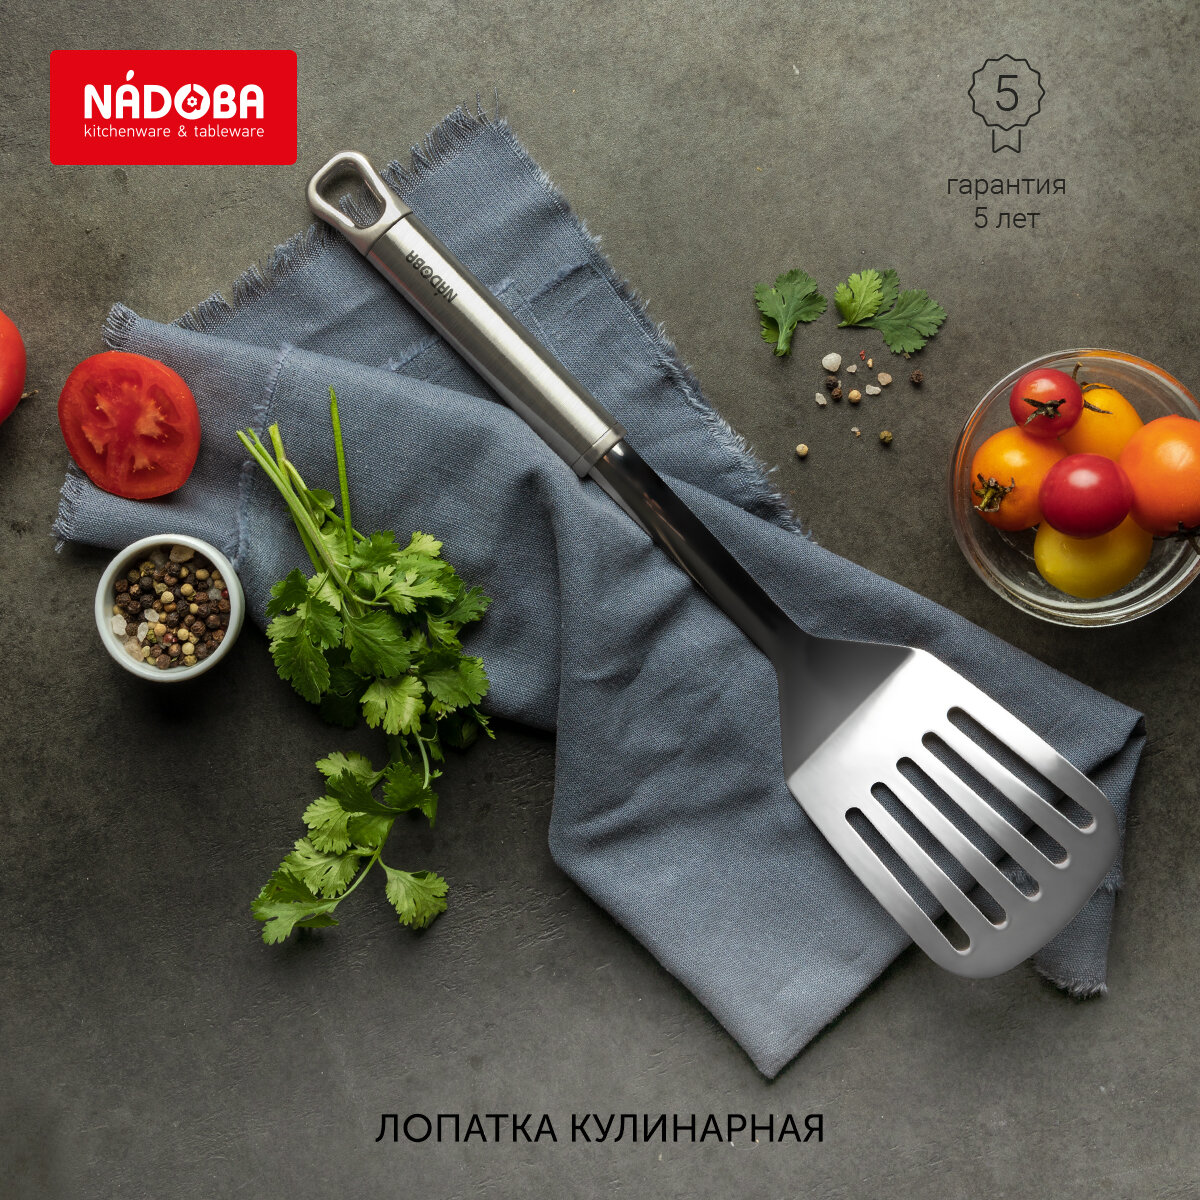 Лопатка кулинарная перфорированная, NADOBA, серия KAROLINA